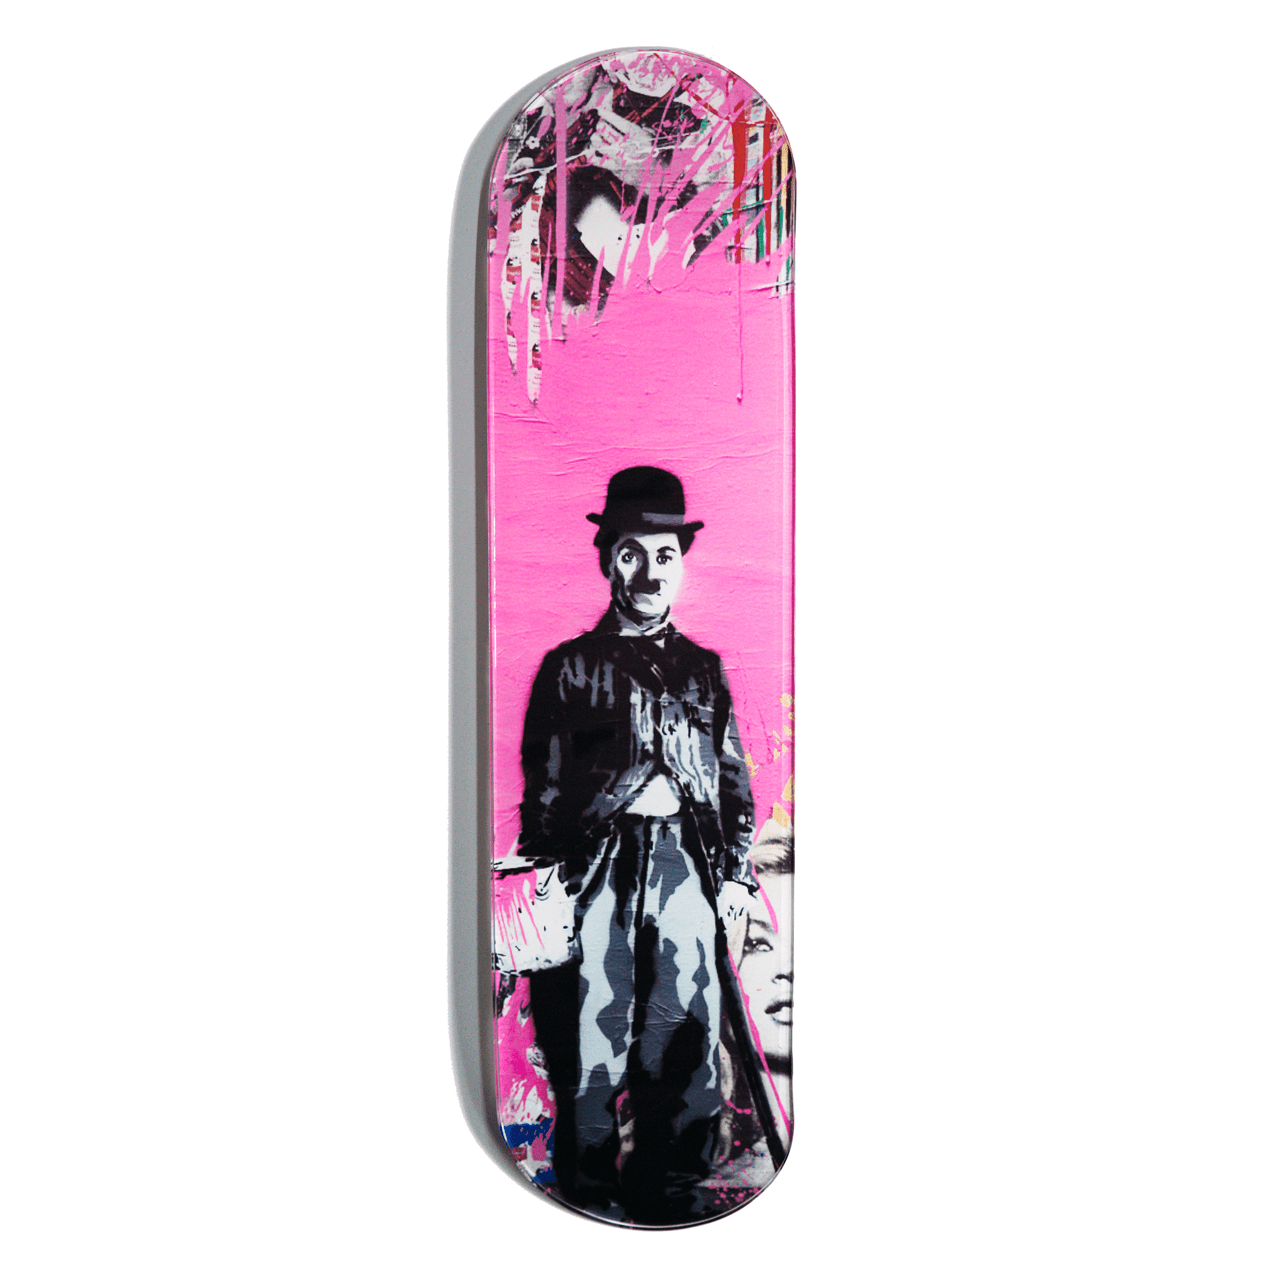 "Charlie Chaplin" - Skateboard - The Art Lab Acrylic Glass Art - Skateboards, Surfboards & Glass Prints Wall Decor for your Home.